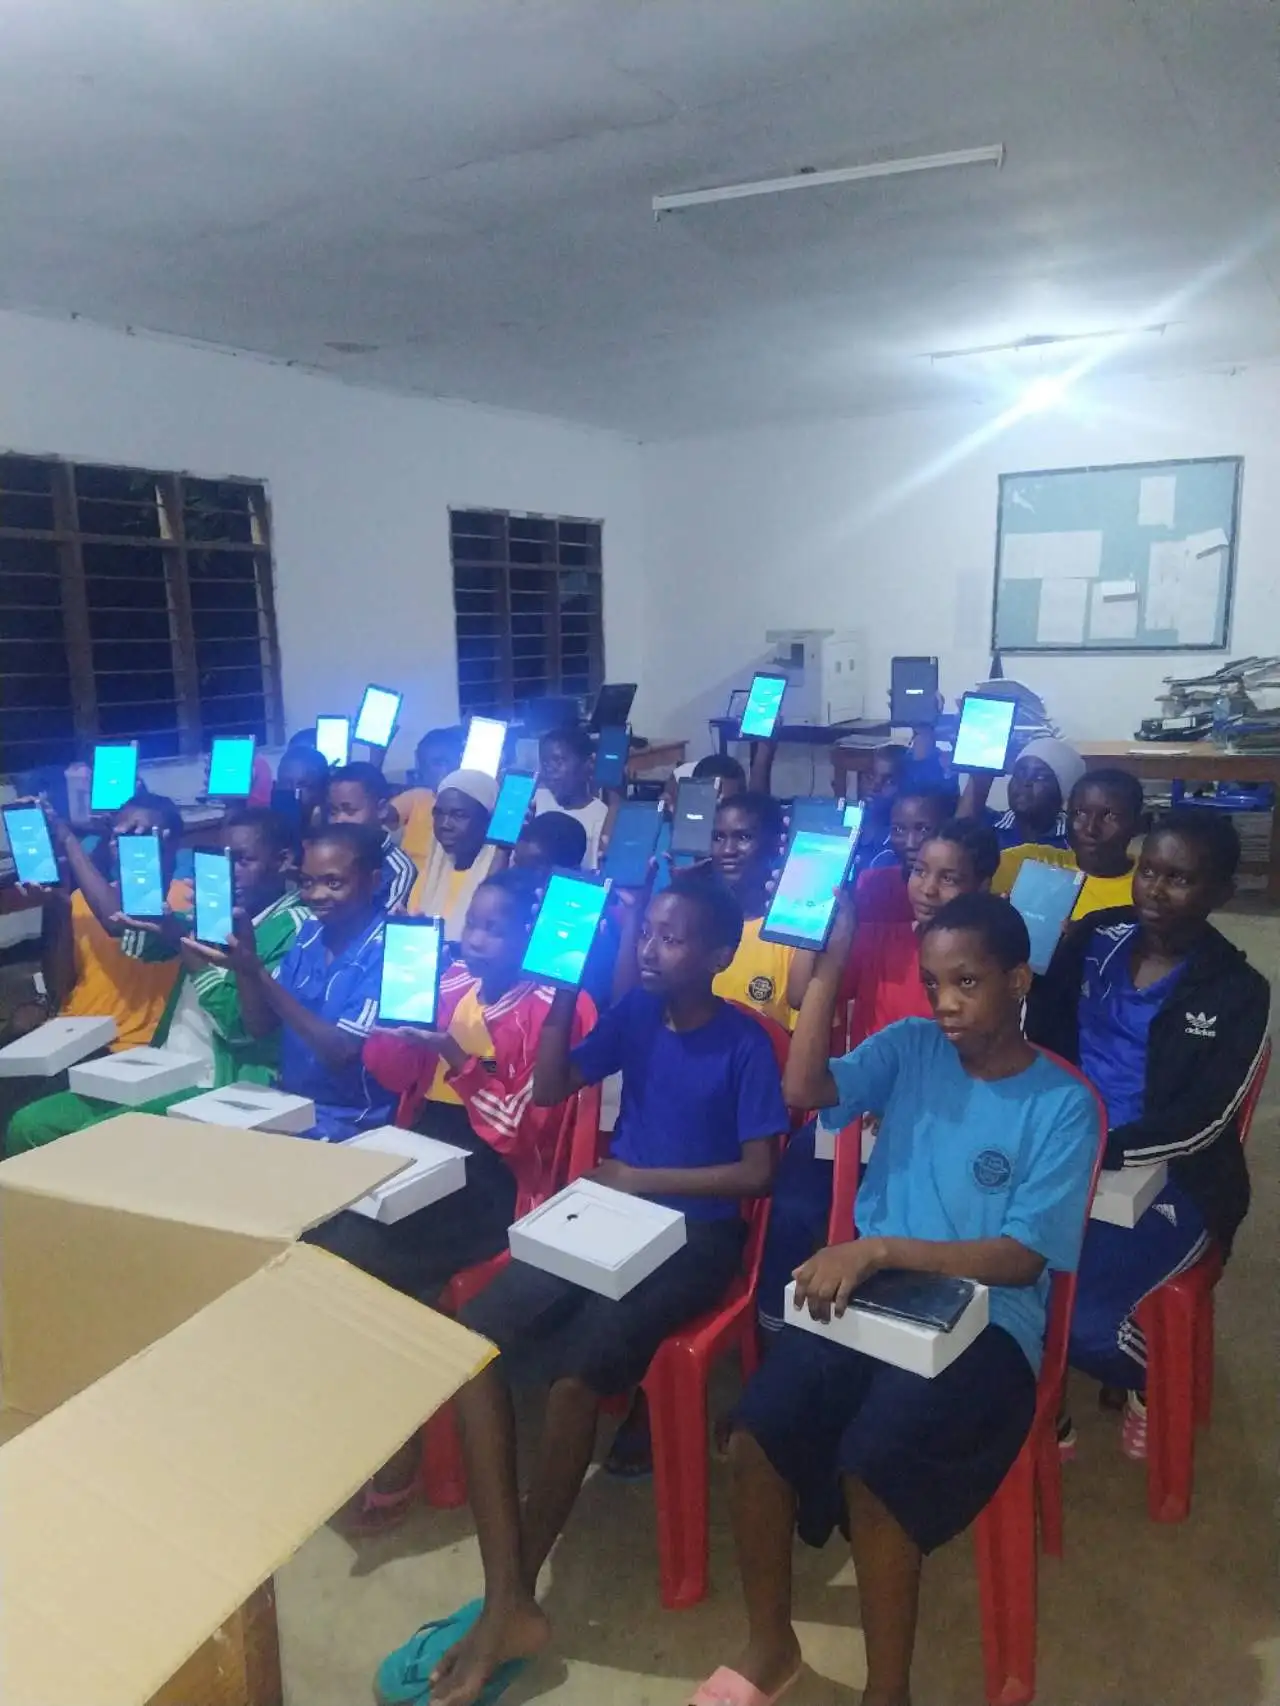 TPS sėkmingai pristato 10 000 8 colių mokomuosius planšetinius kompiuterius į Tanzaniją